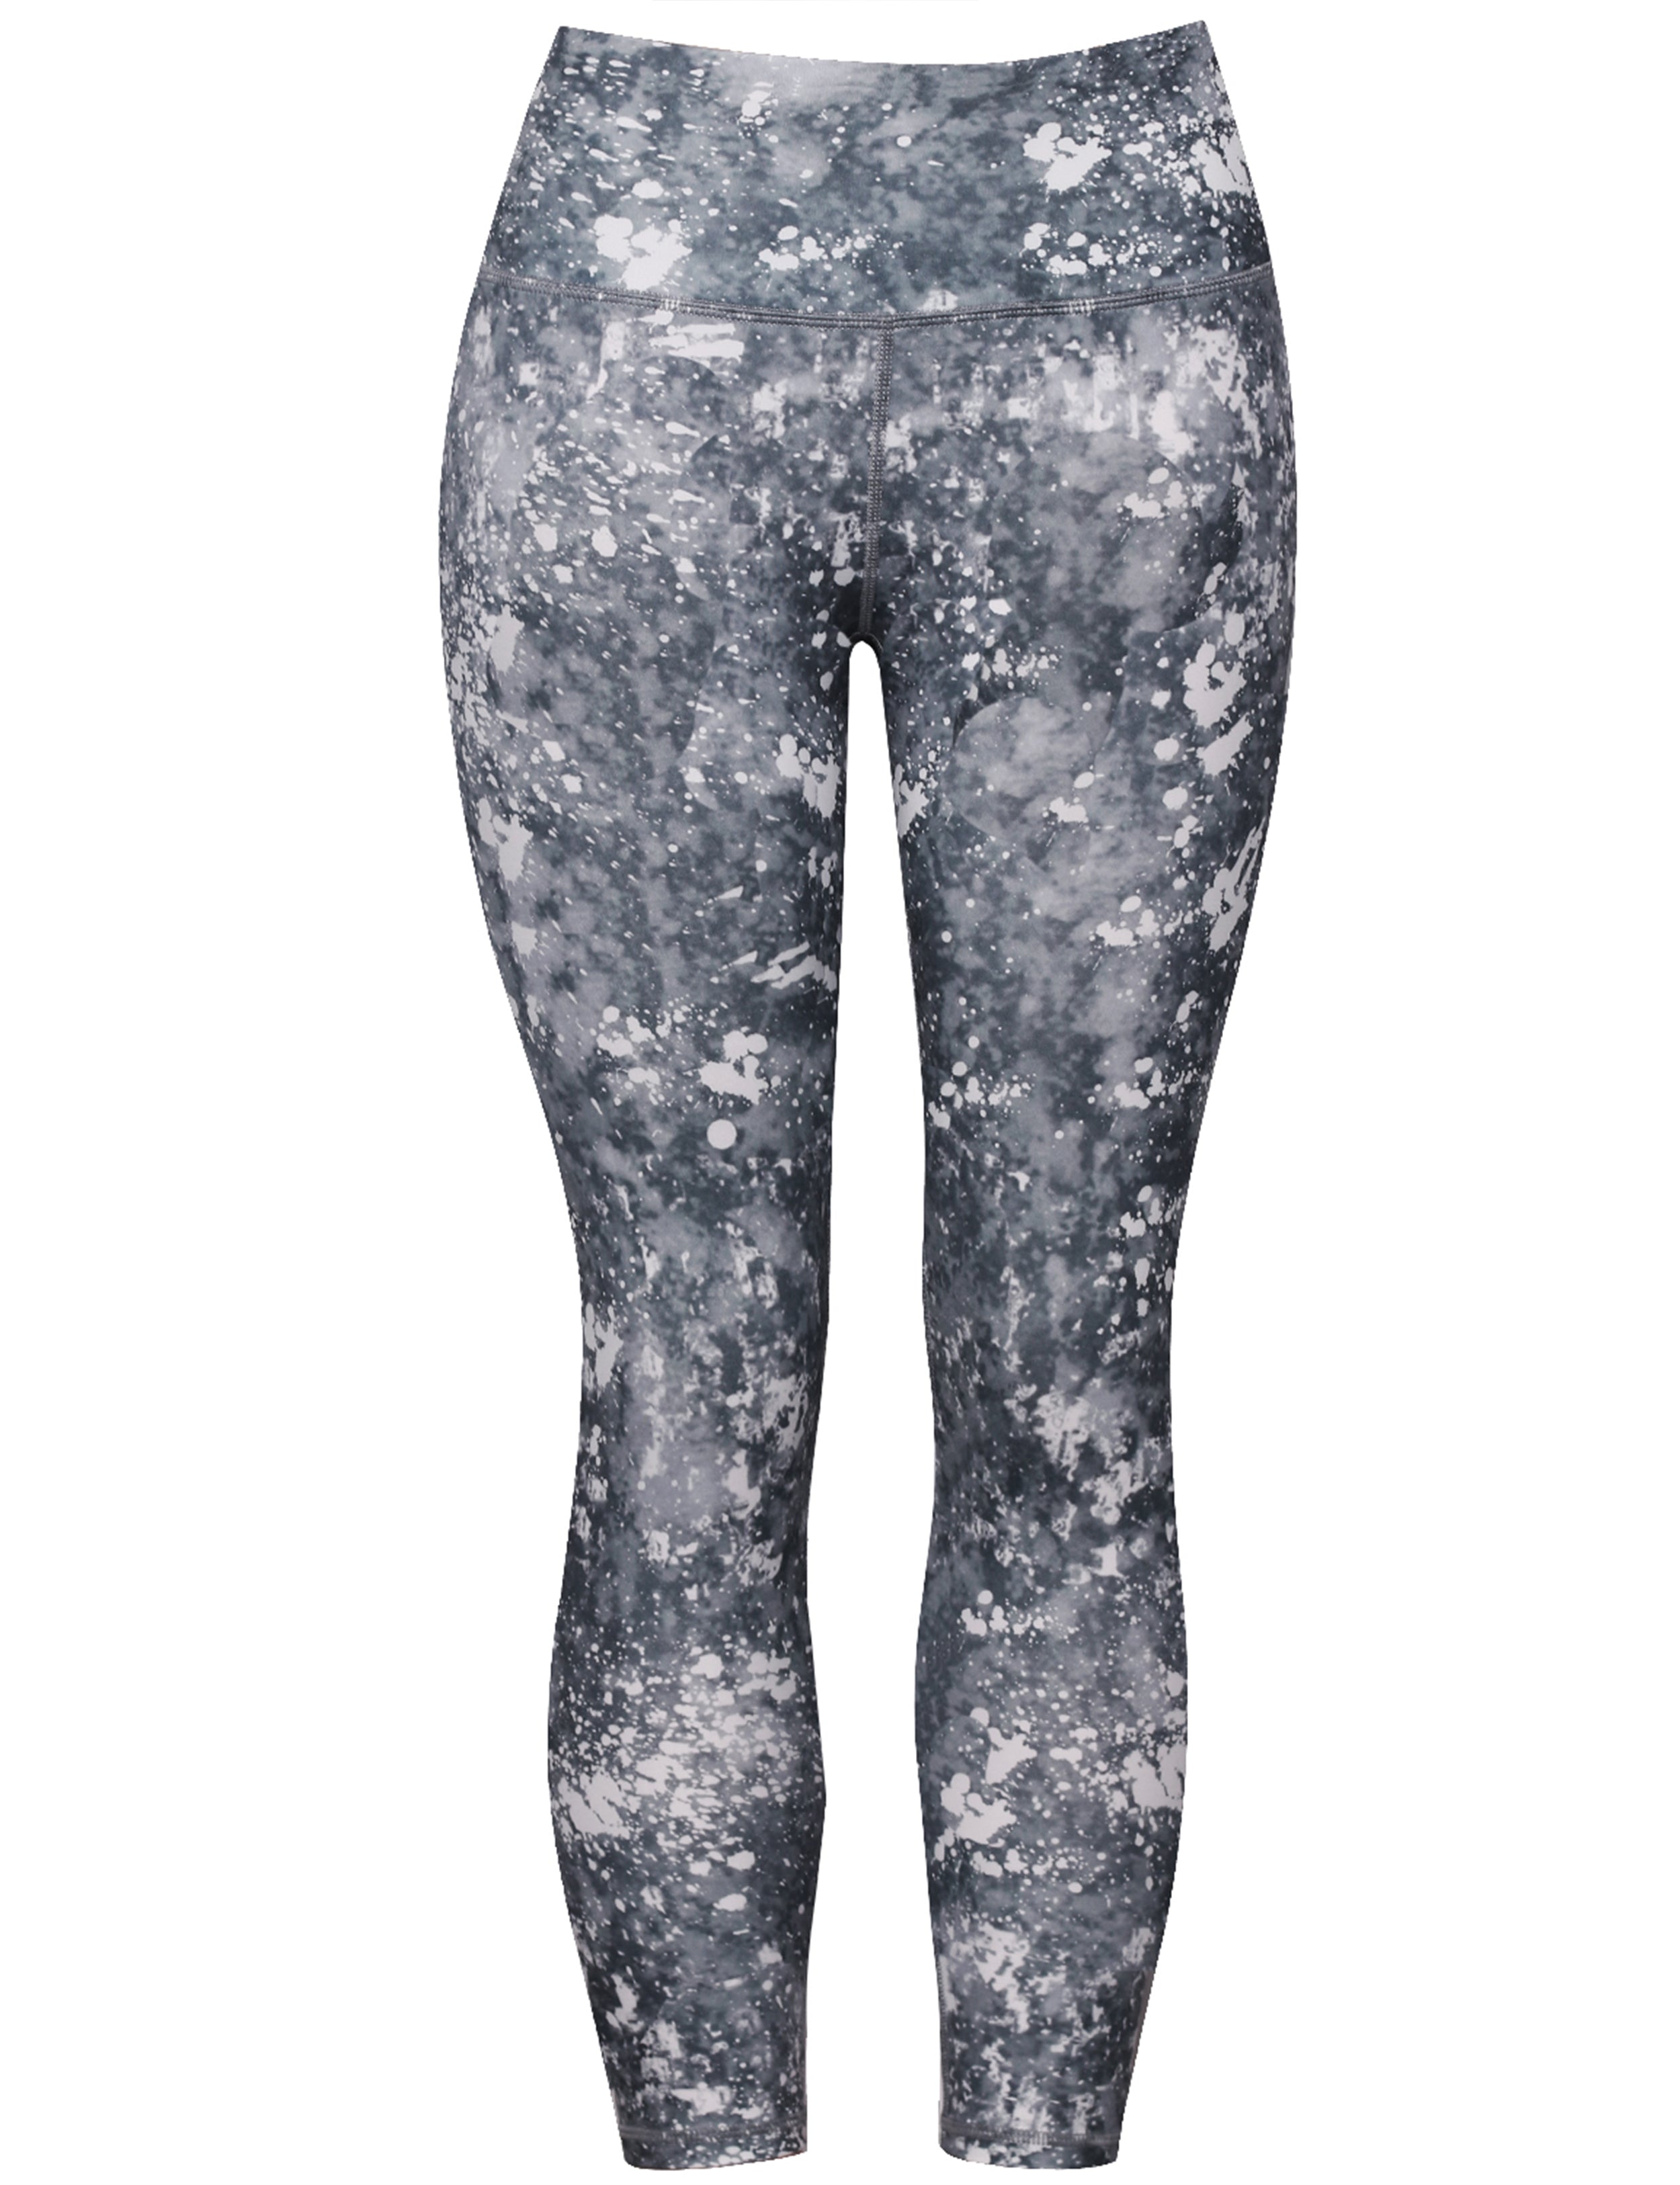 22" Printed Yoga Pants LIME